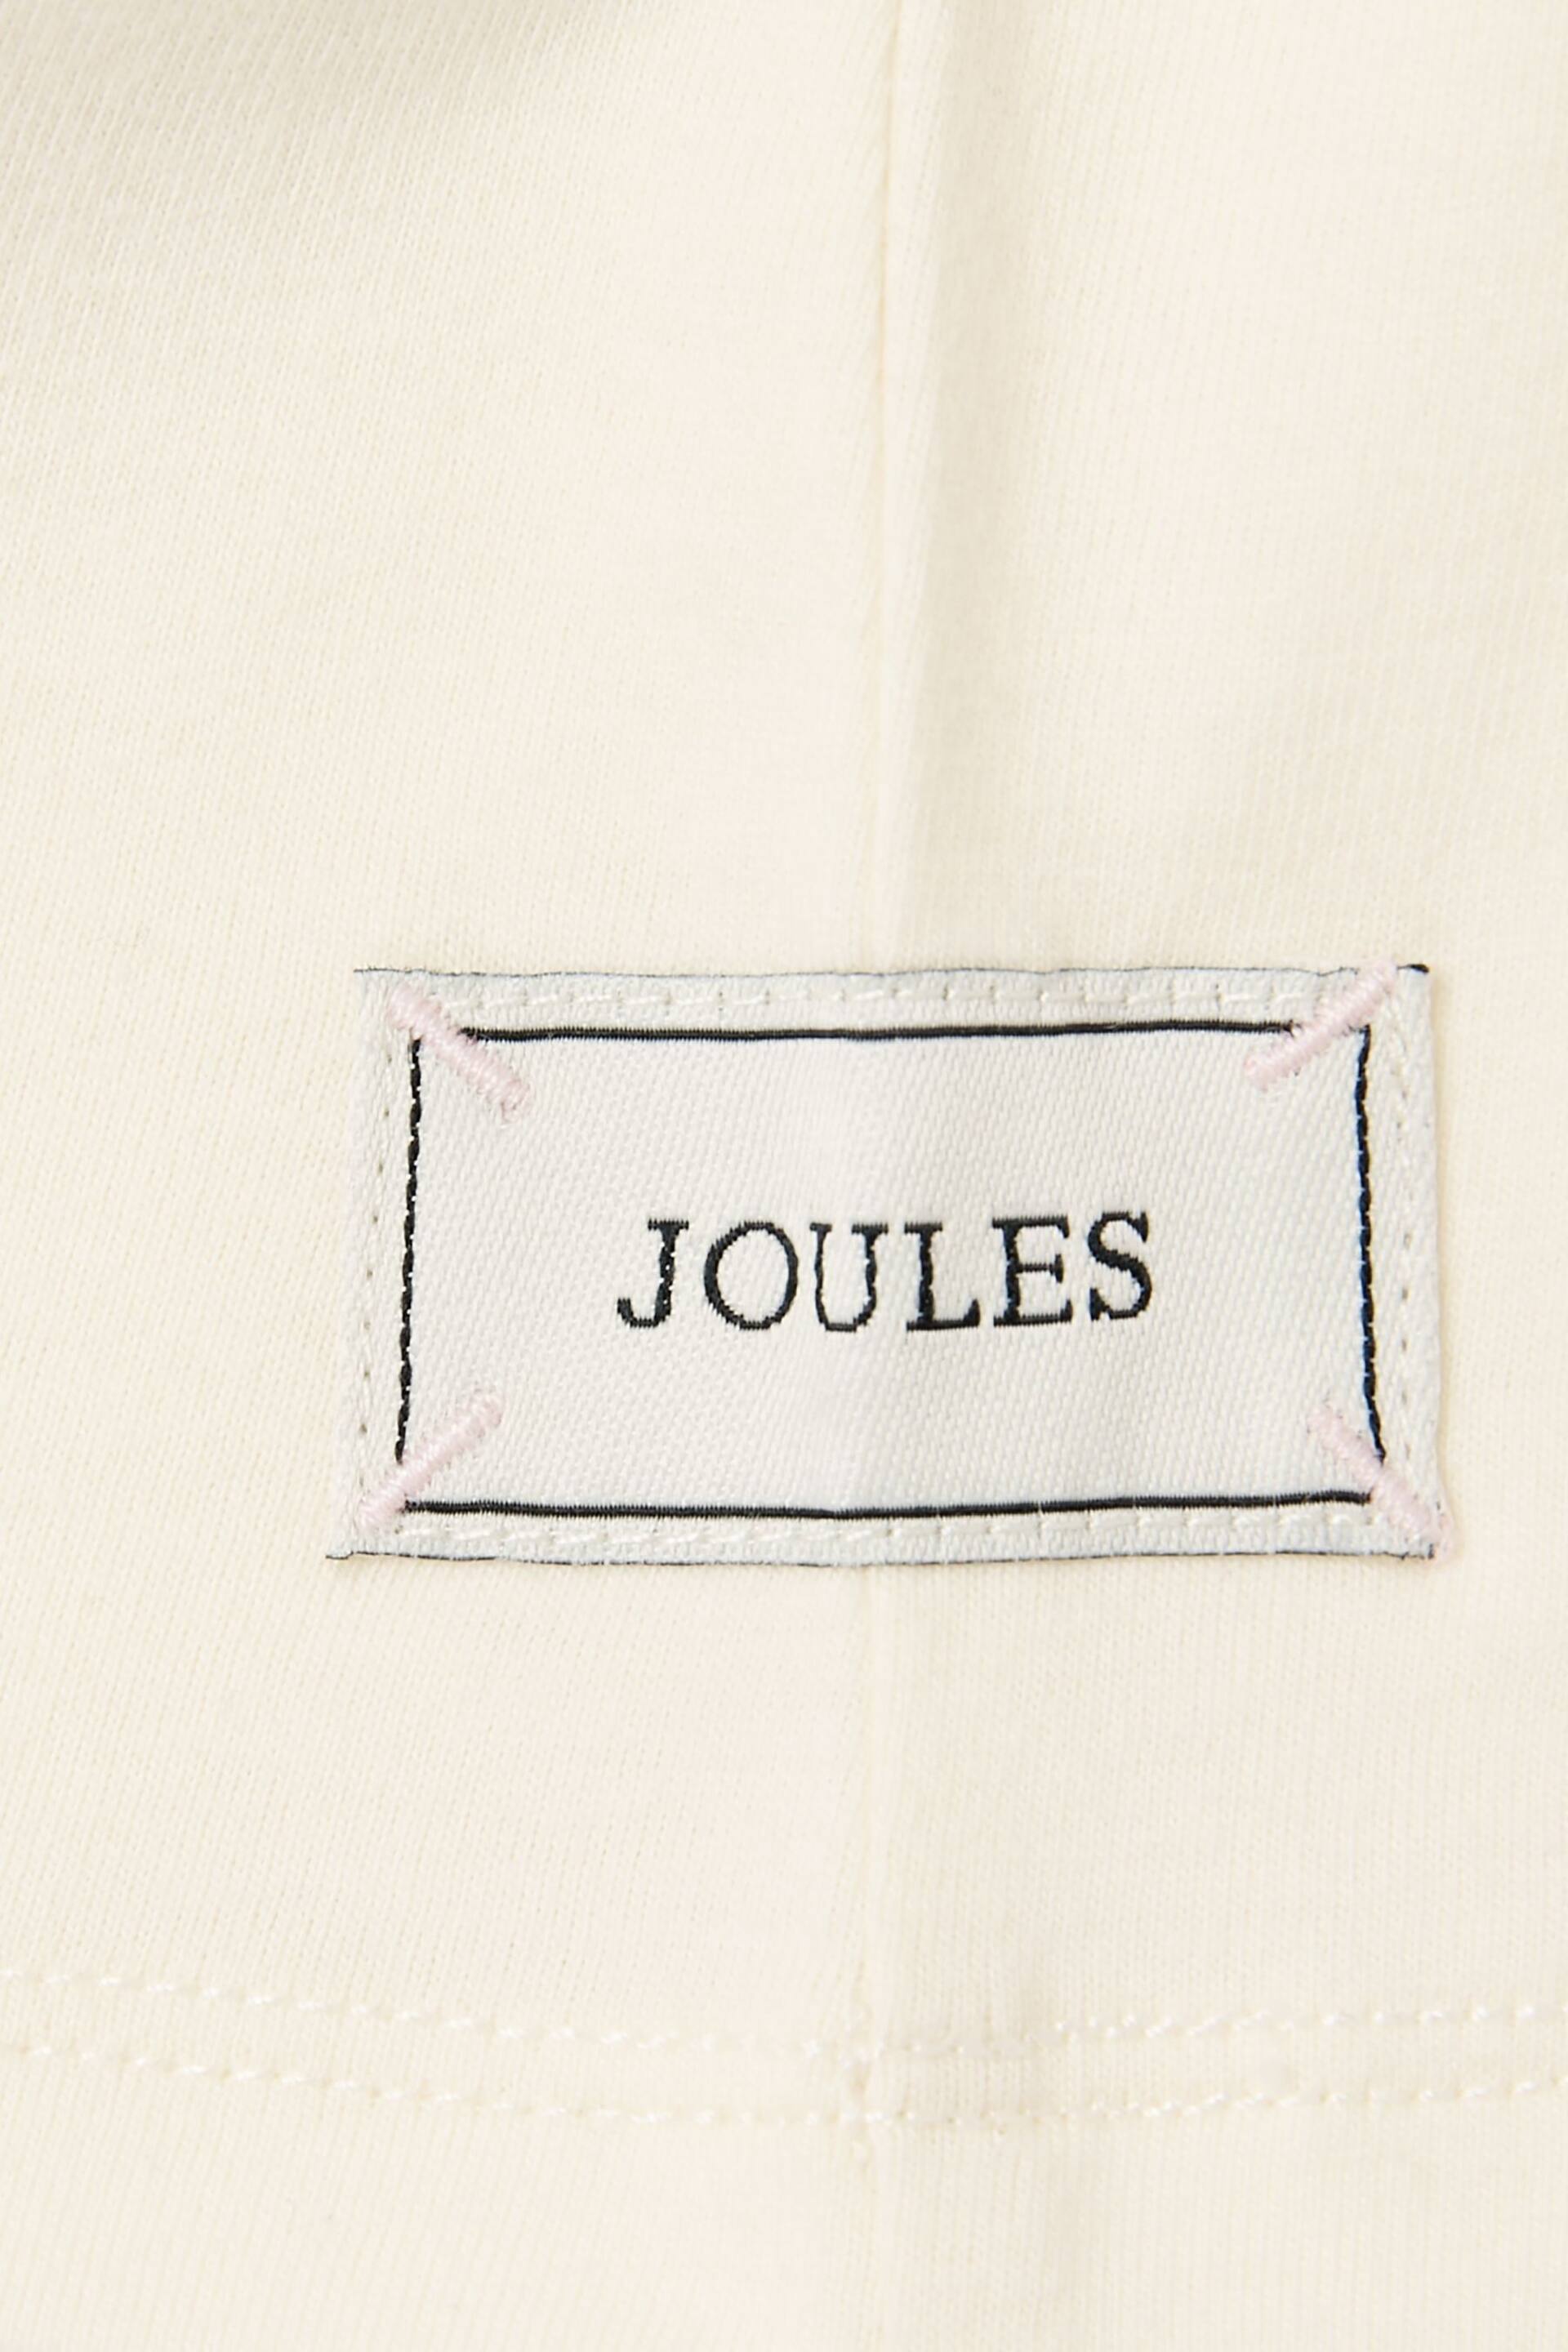 Joules Flutter Astra White Short Sleeve Artwork T-Shirt - Image 5 of 5